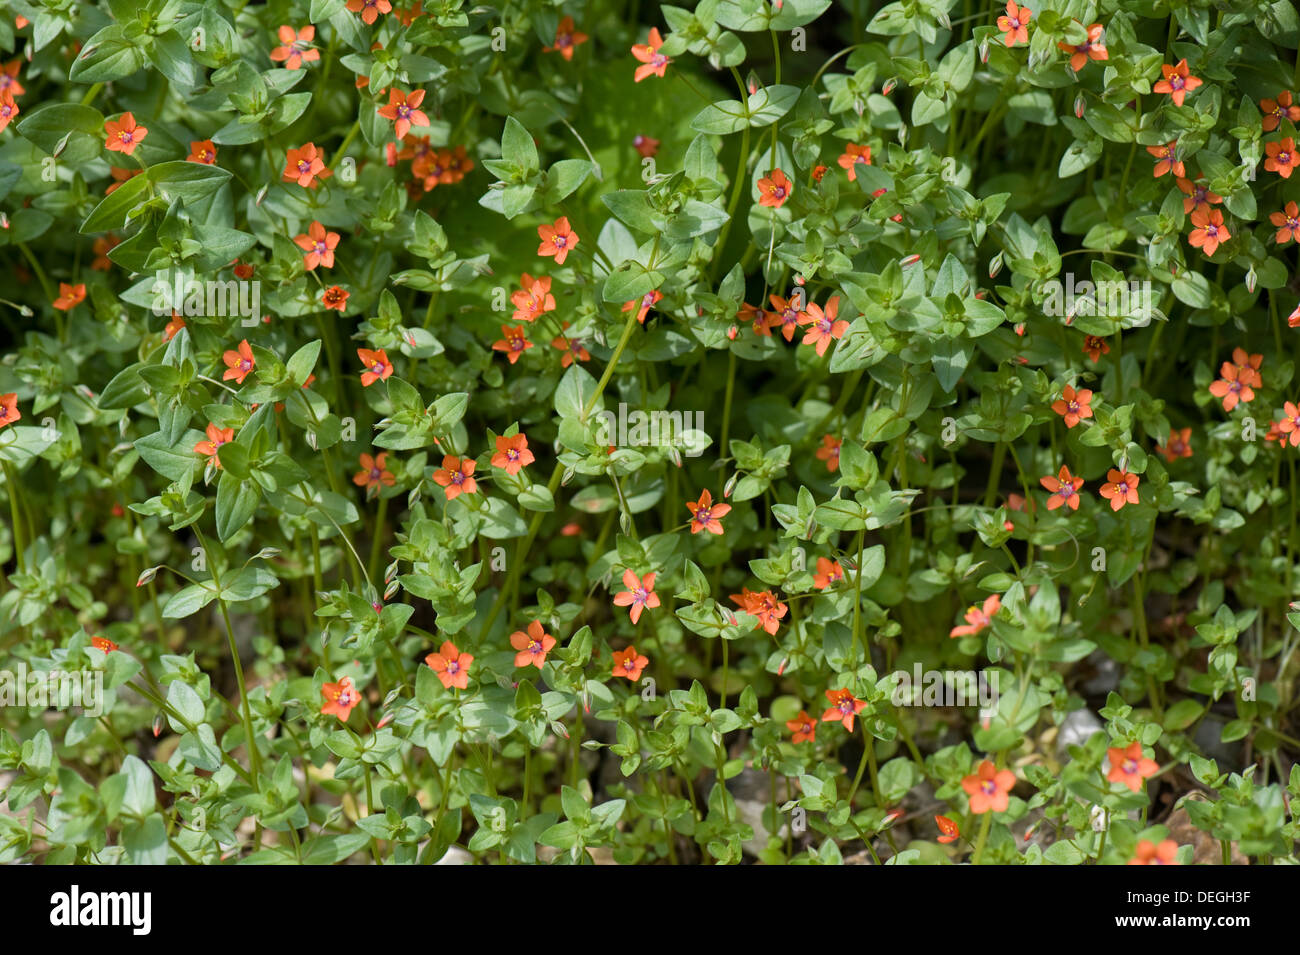 Scarlet pimpernel, Anagallis arvensis, plants in flower Stock Photo